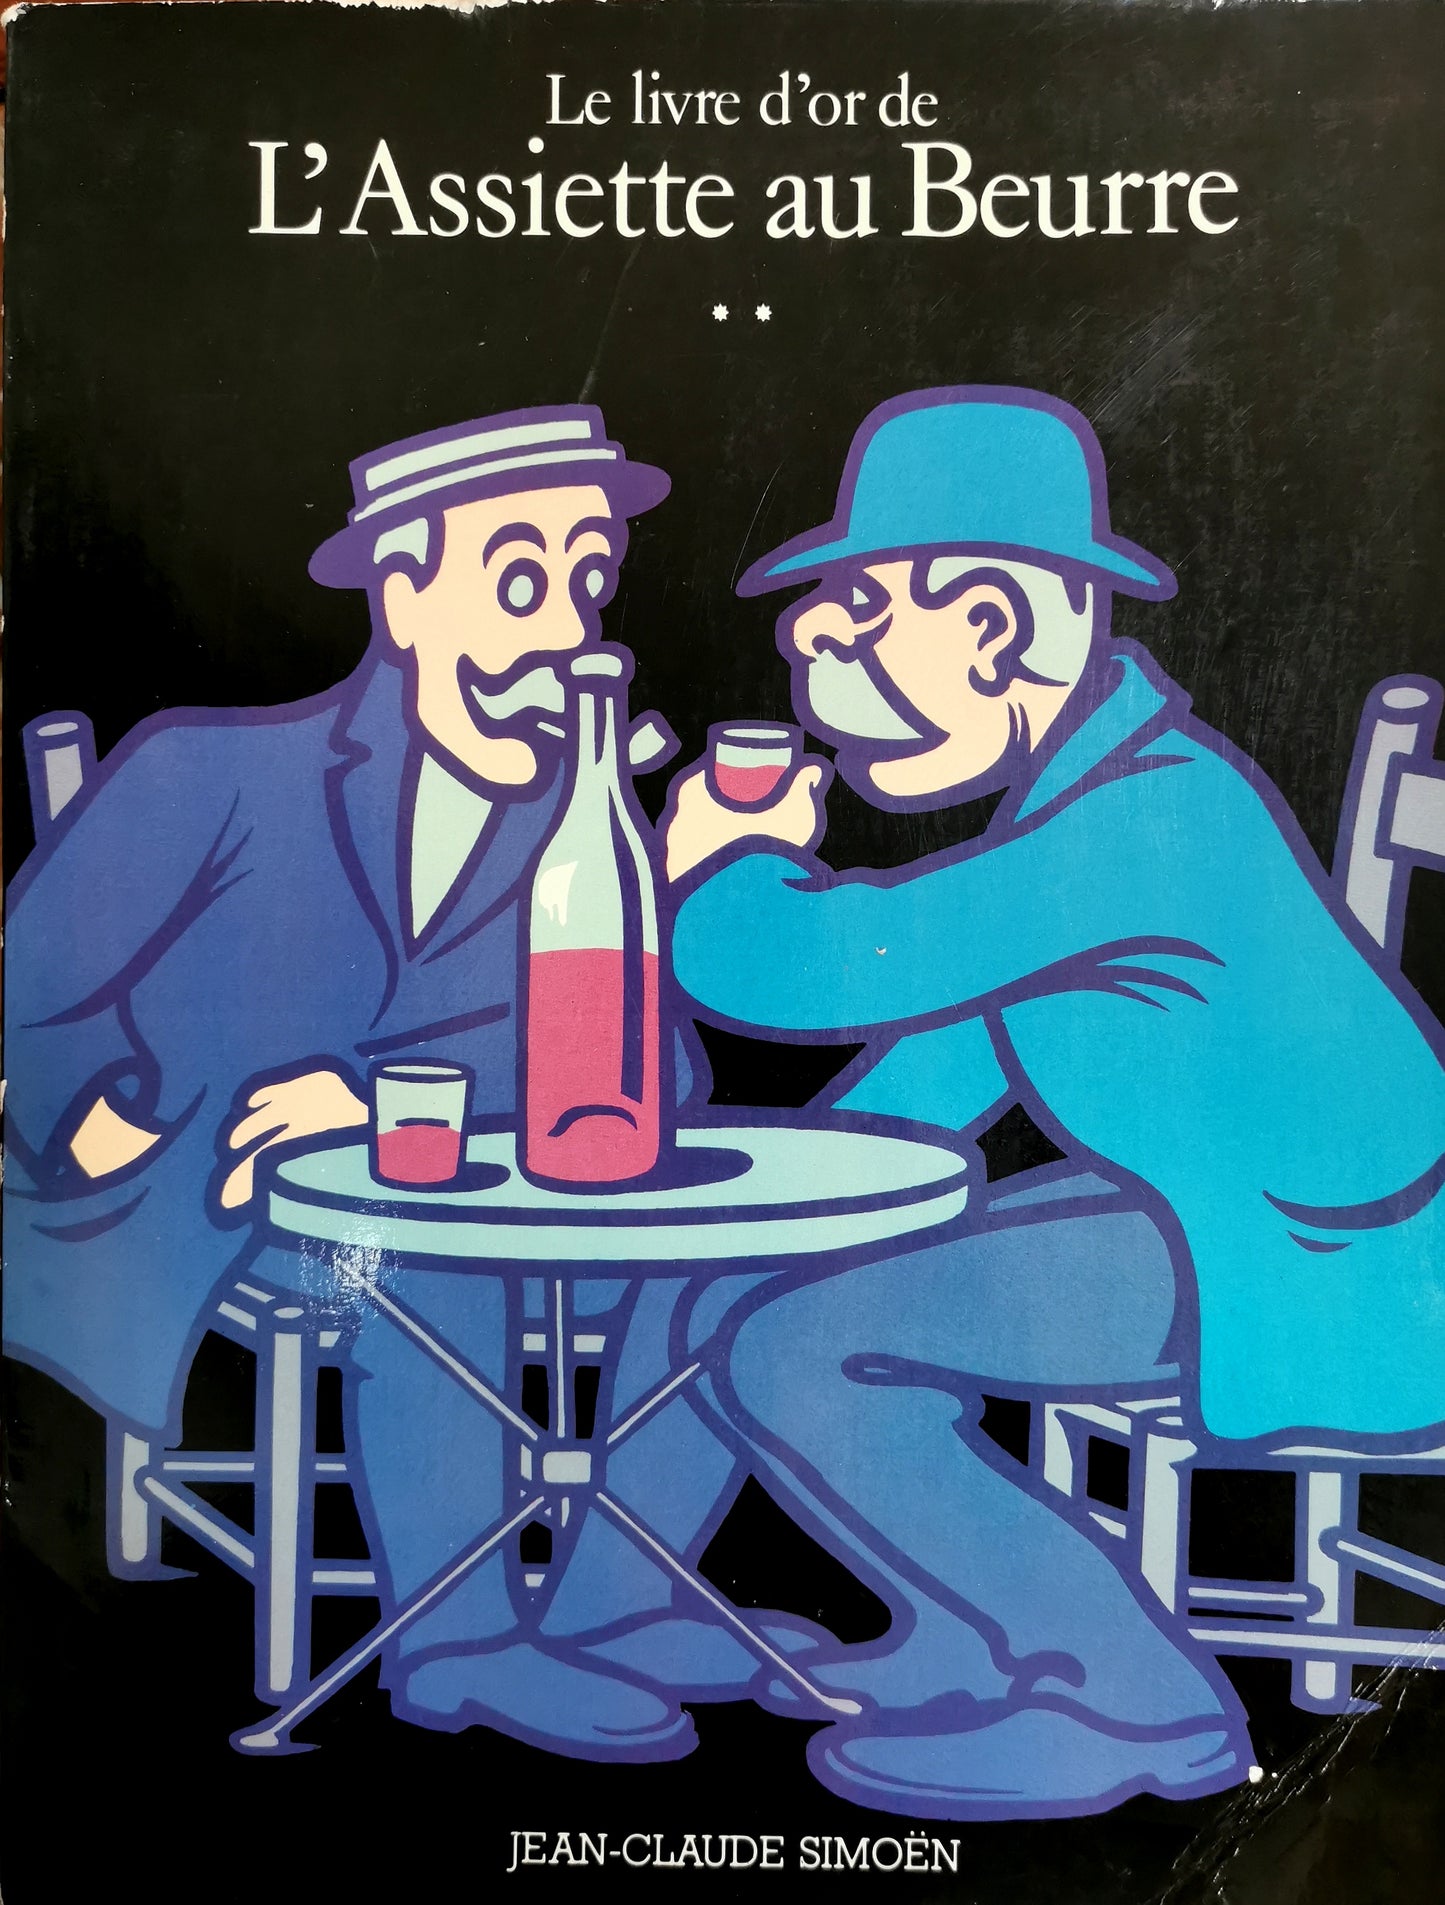 Le livre d'or de L'Assiette au Beurre, Tome II 1906-1912, dessins choisis et présentés par Jean-Michel Royer, ed. Jean-Claude Simöen, 1978.